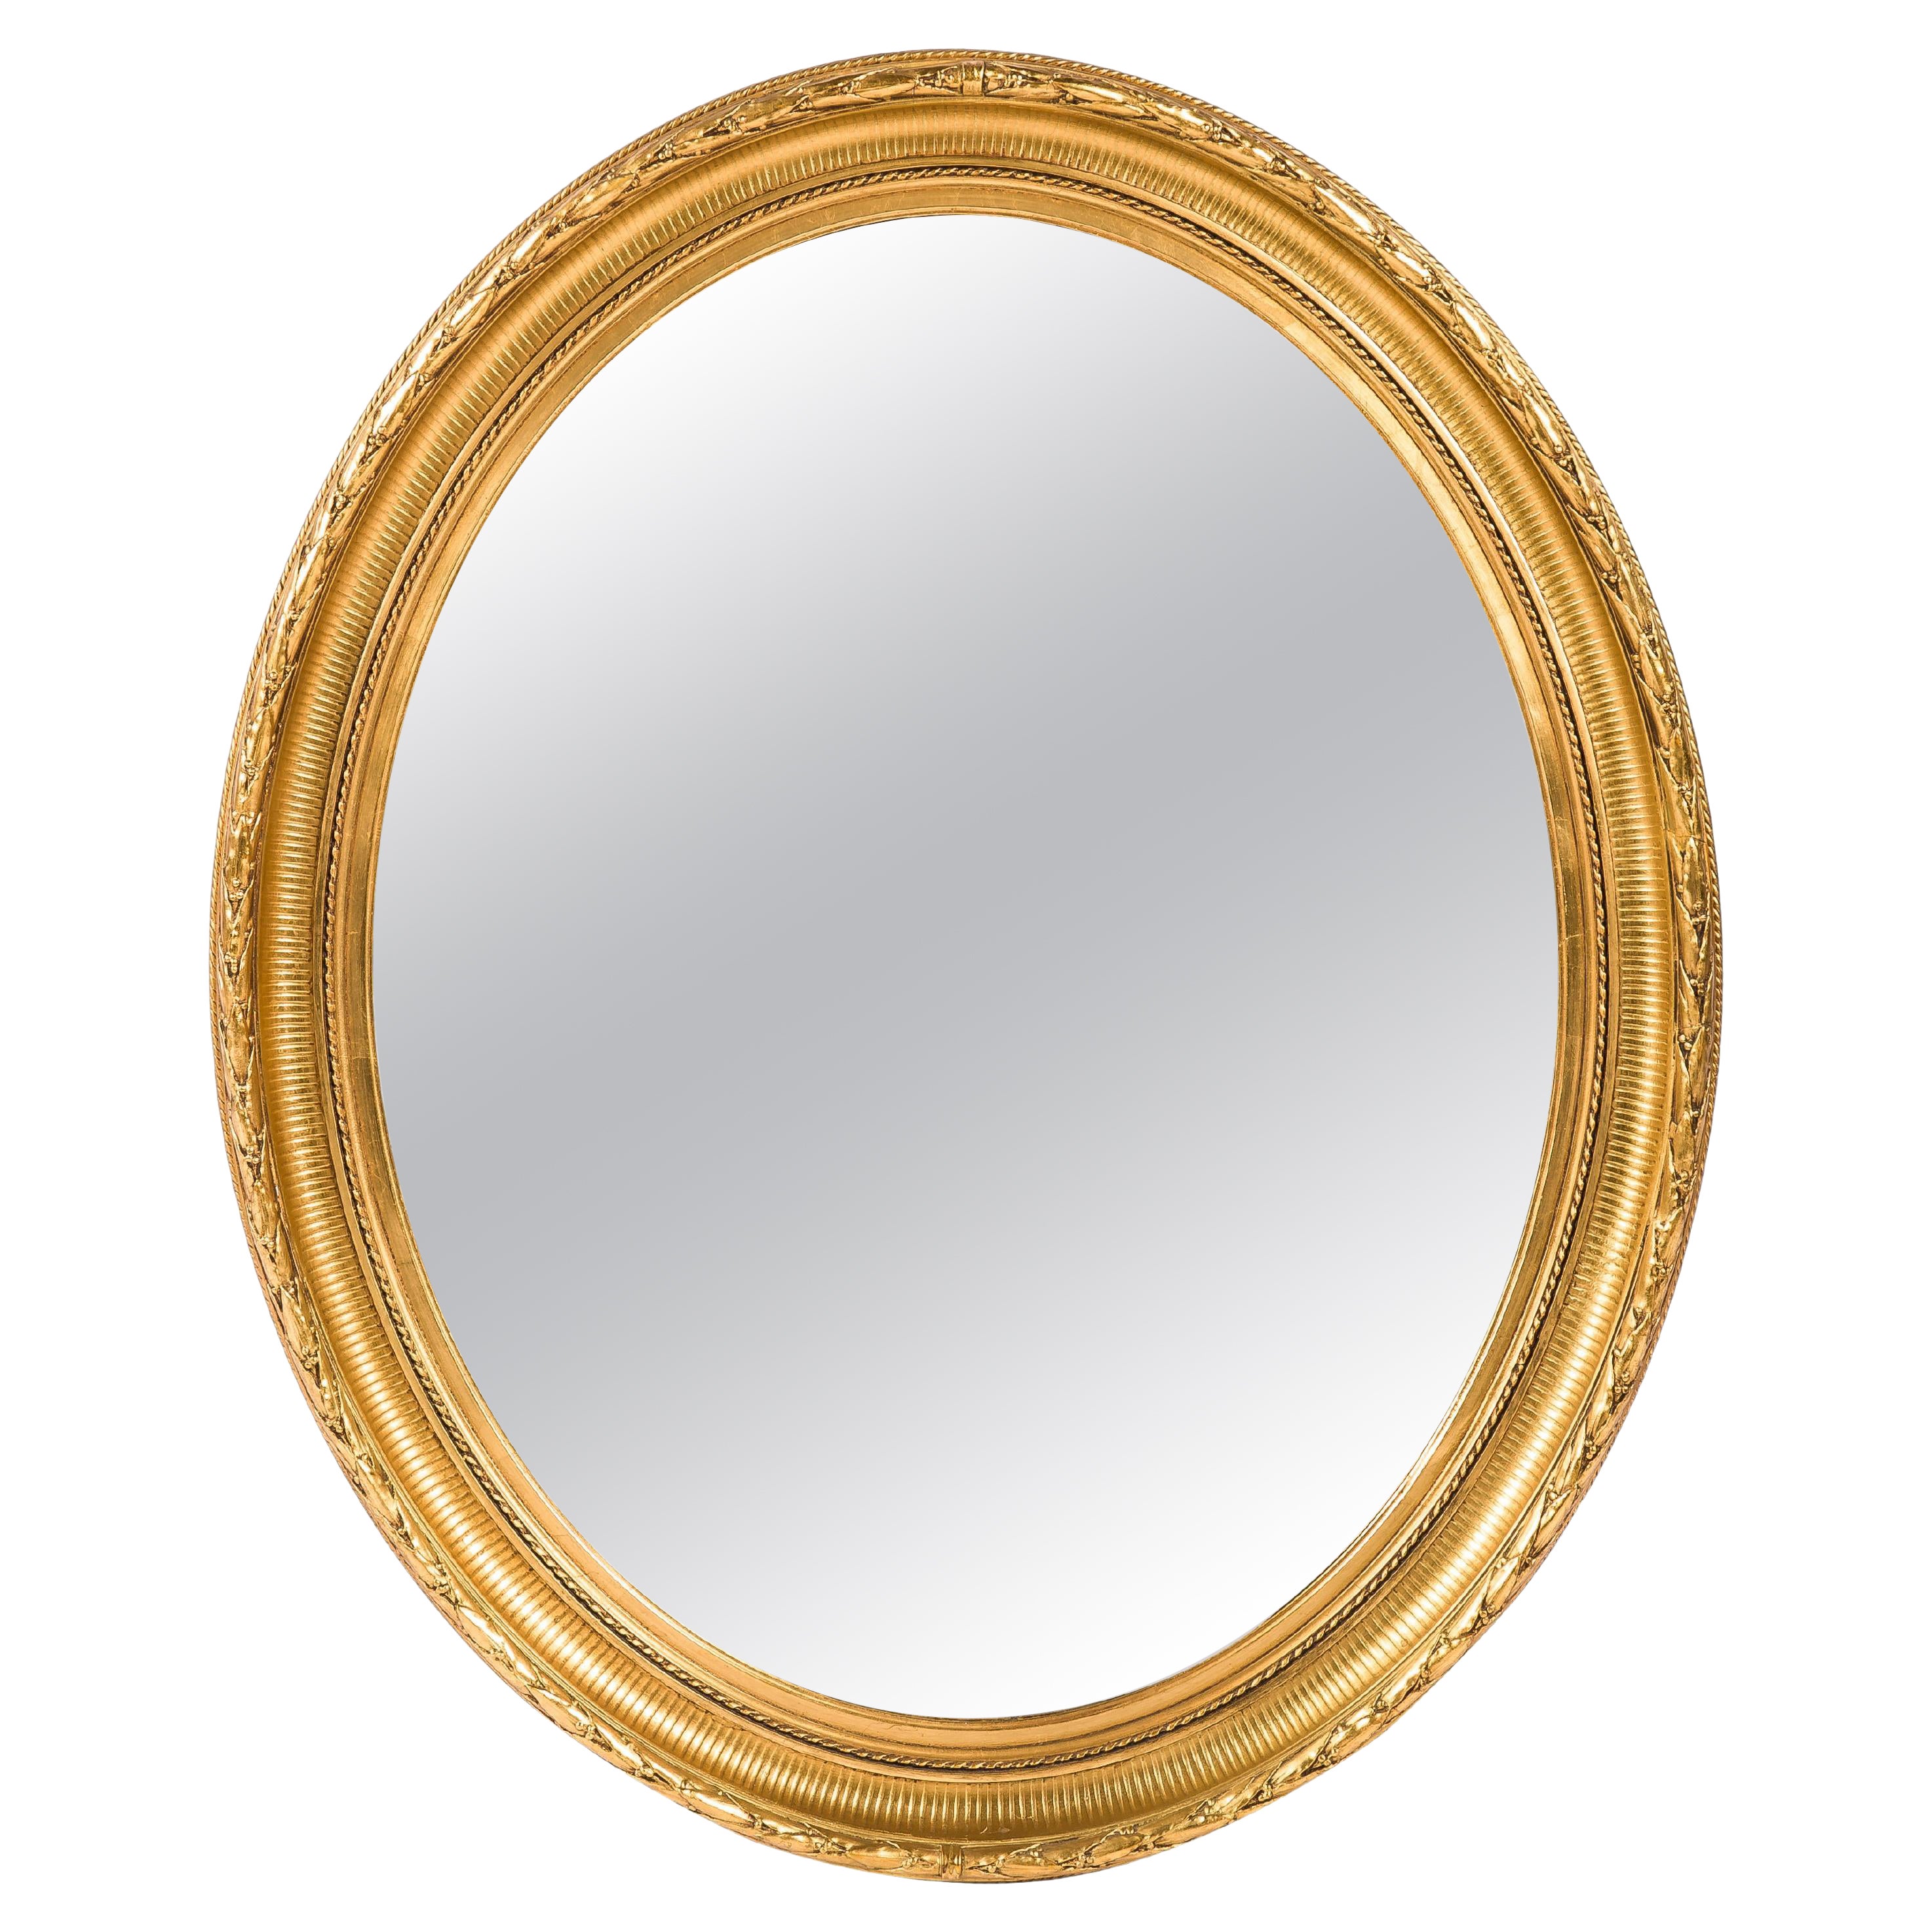 Antique miroir ovale français du 19ème siècle, doré à la feuille d'or Louis Seize ou Empire